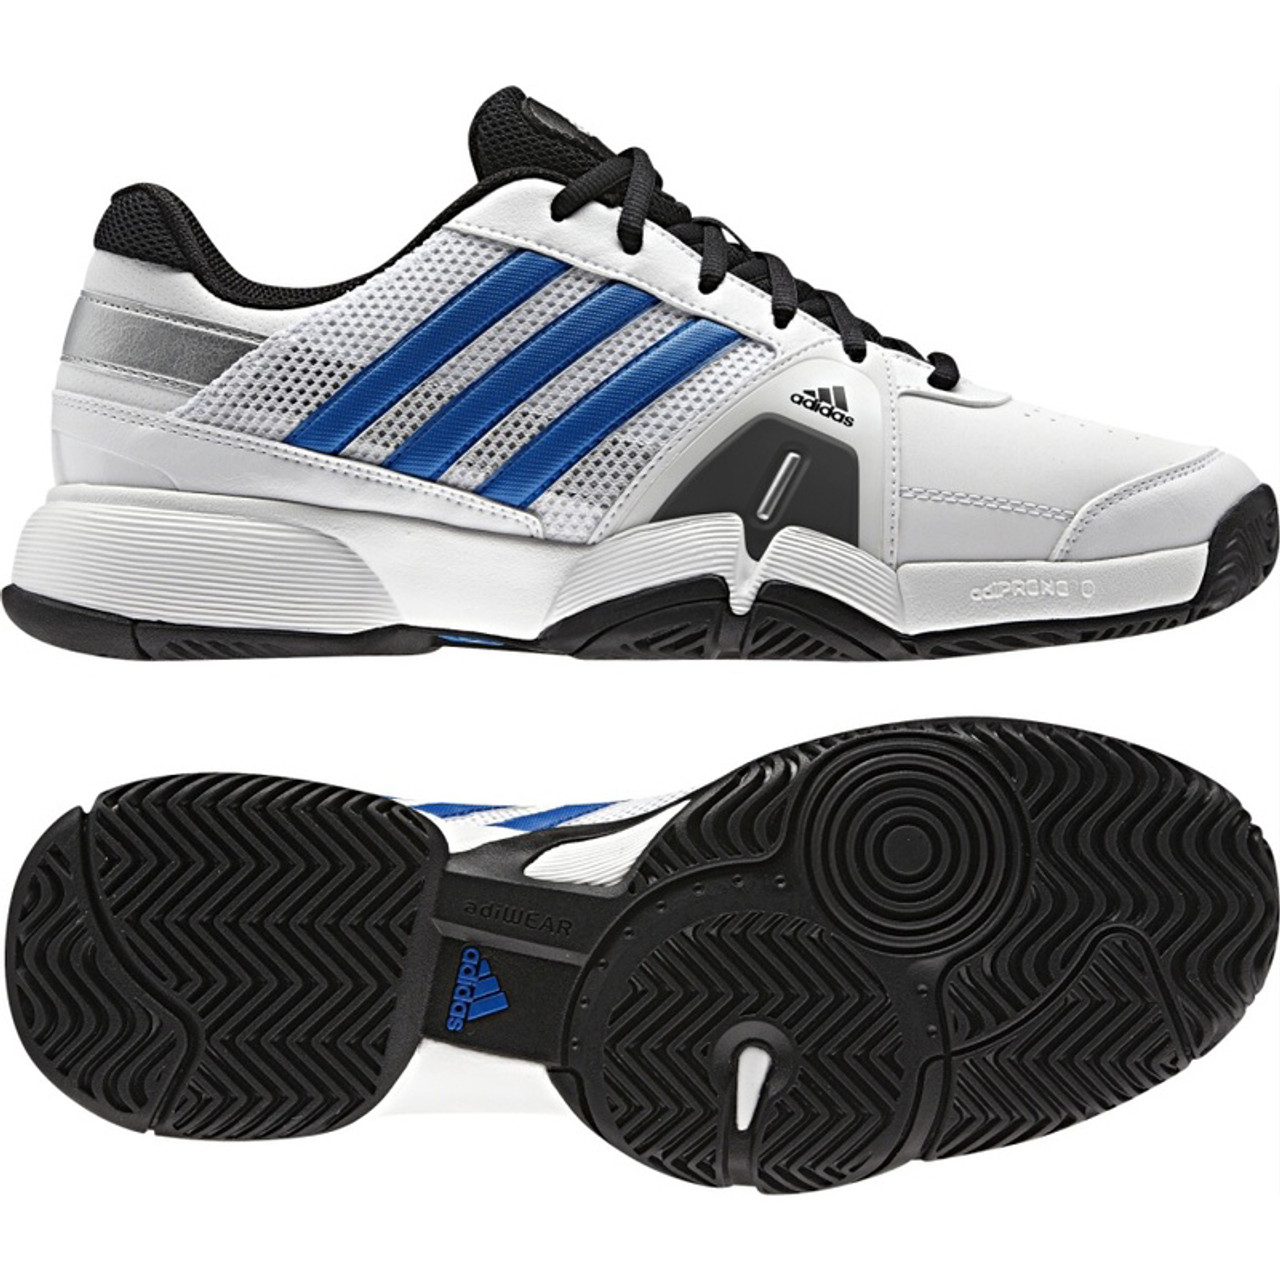 Adidas Barricade 3 White/Blue Mens Shoes - Discount Adidas Men's Athletic Shoes & More - | Shoolu.com